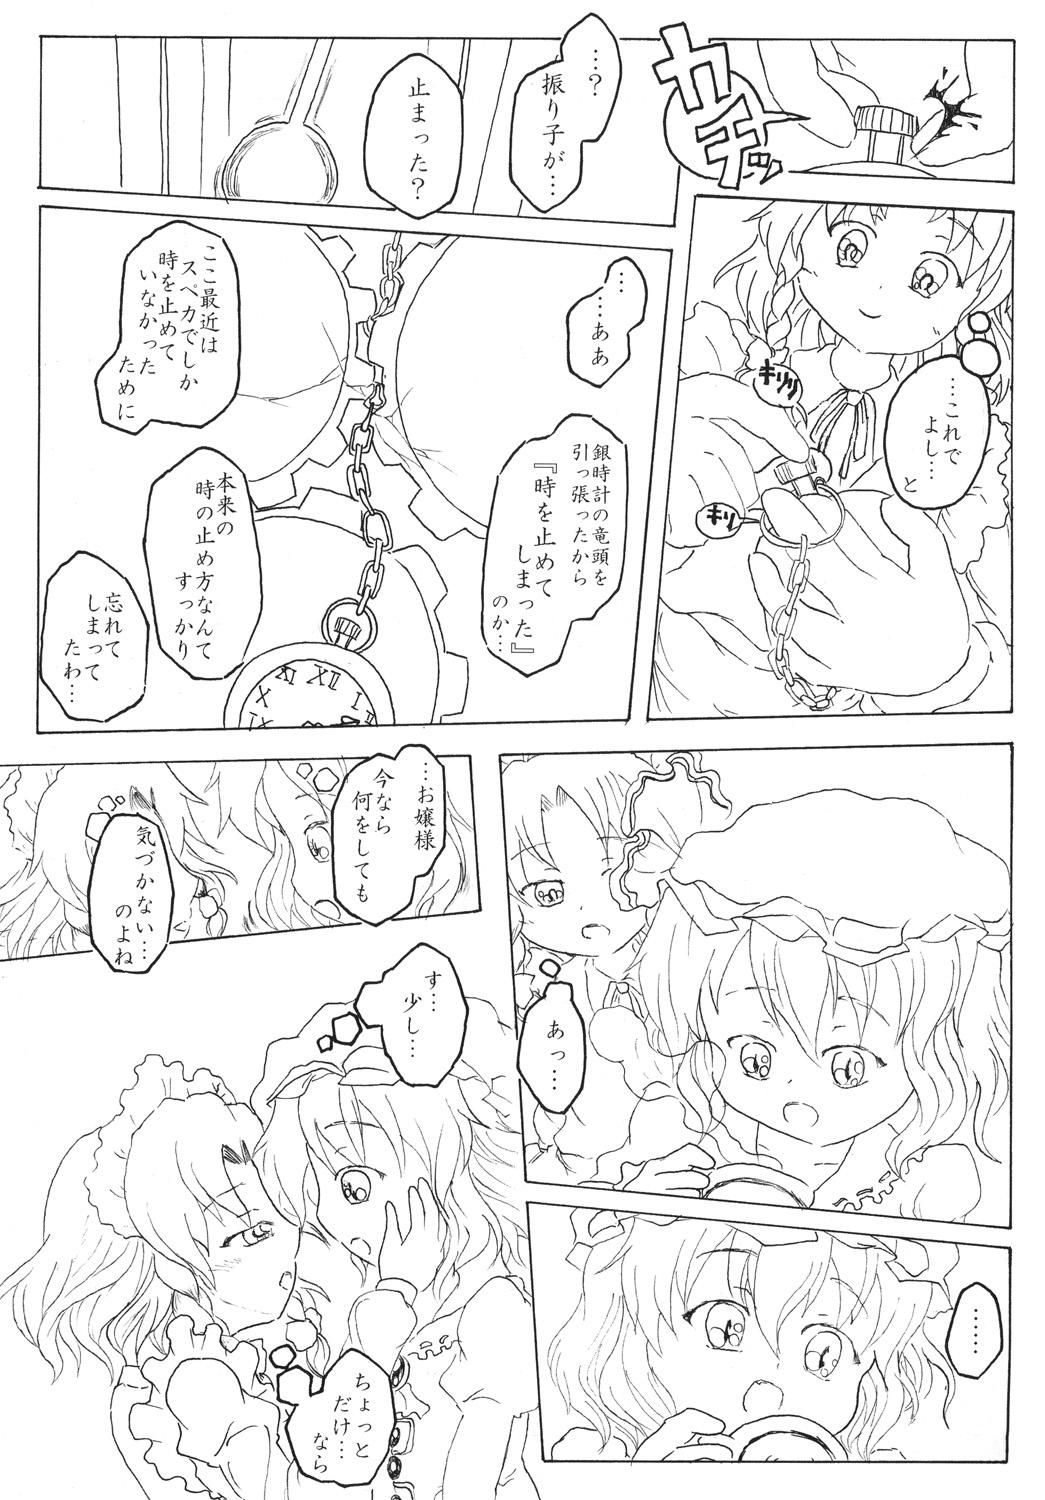 Prima Sakuya no toki kan - Sakuya's Time F*ck - Touhou project Pissing - Page 6